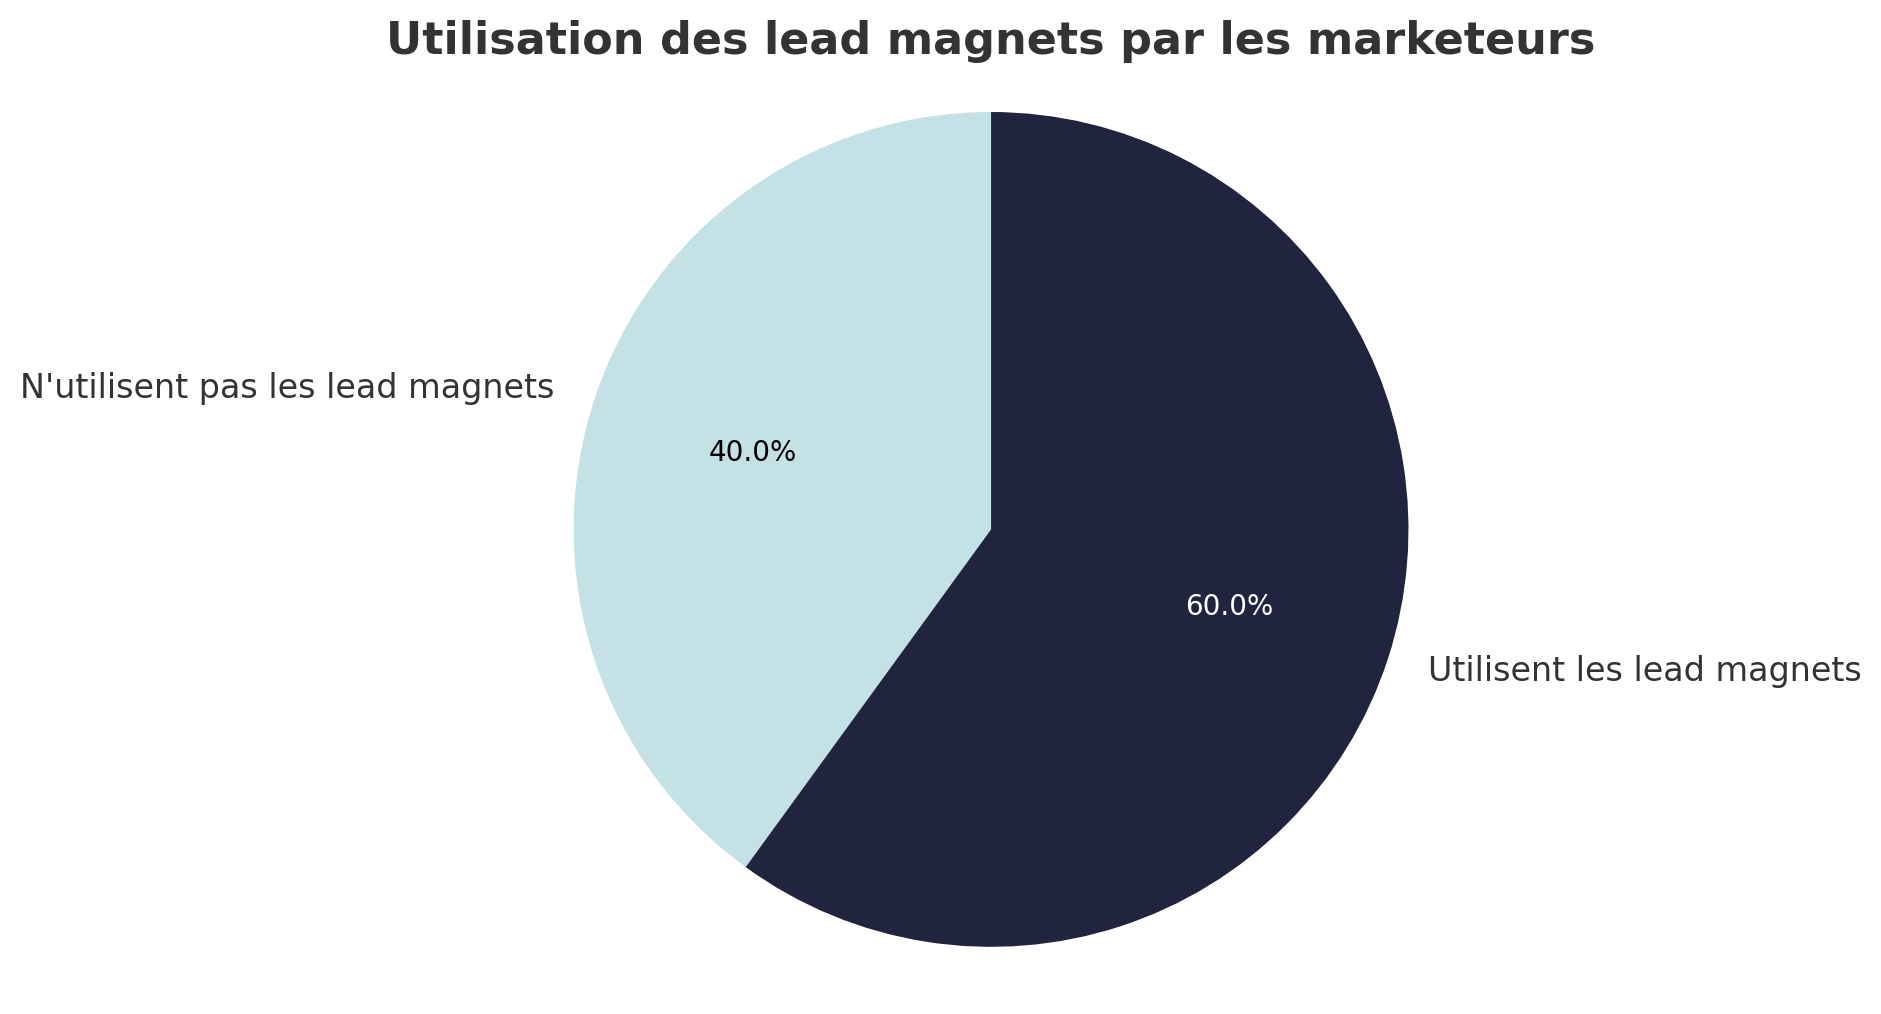 Utilisation des lead magnets par les marketeurs